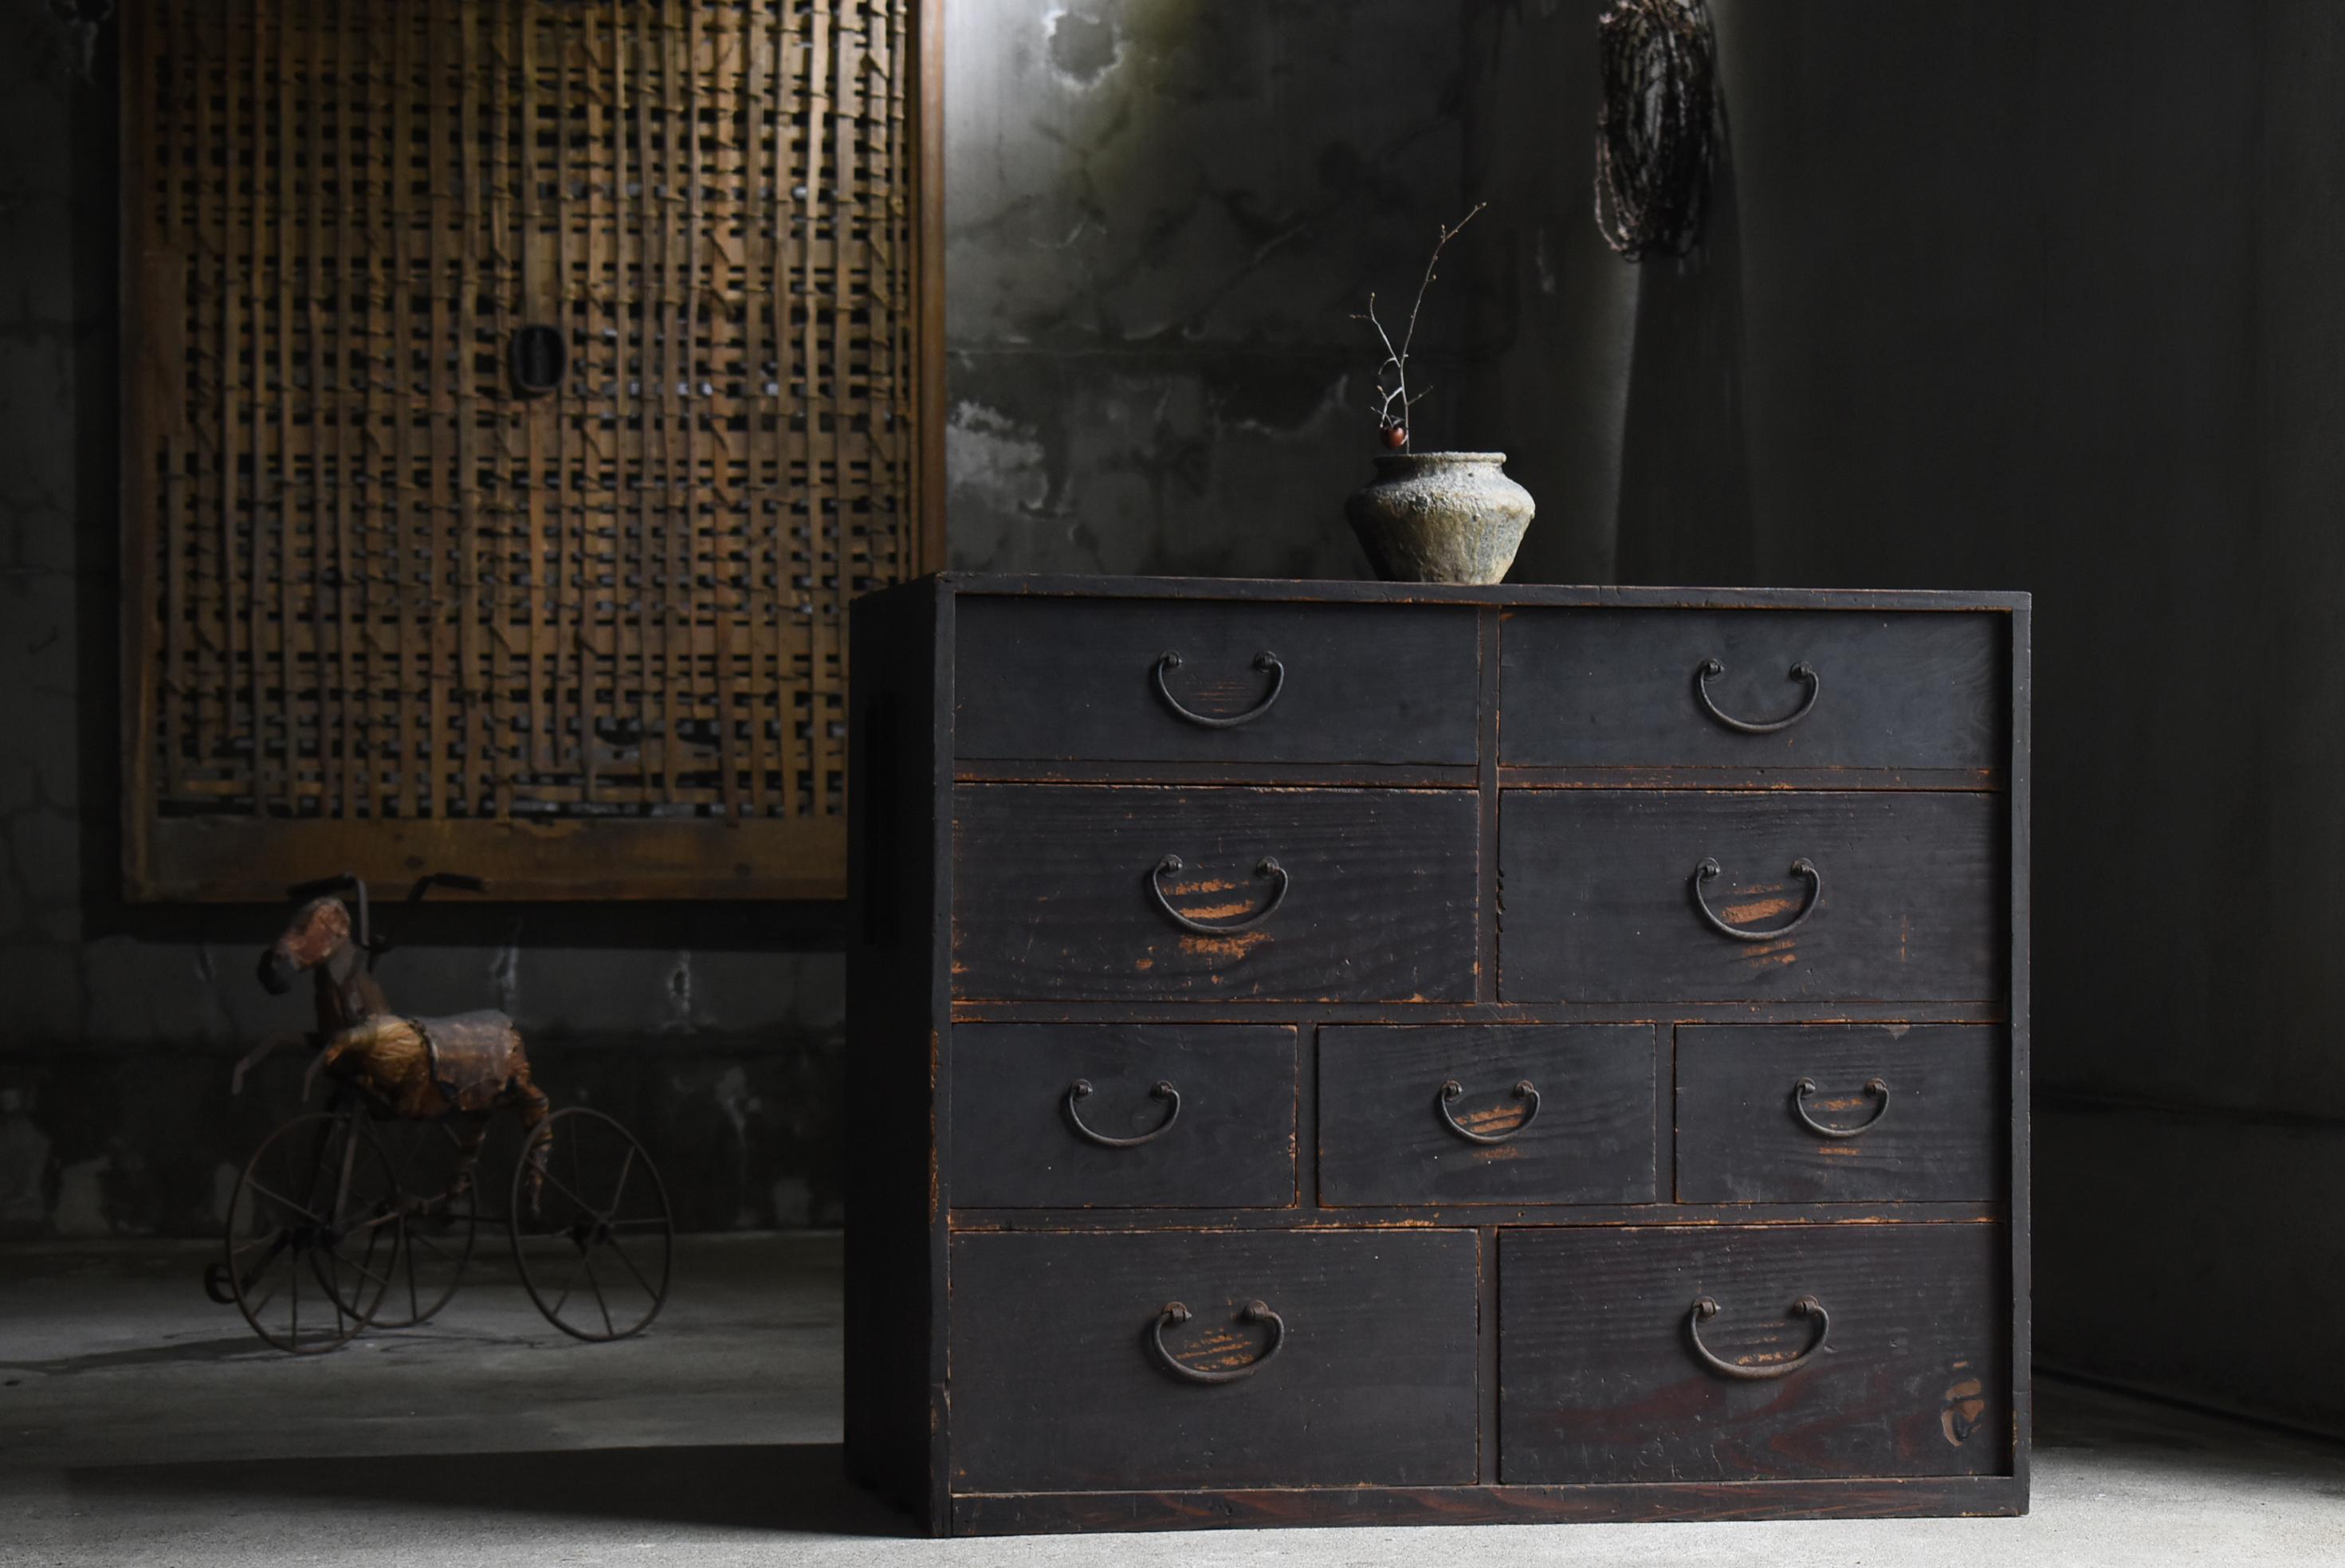 Très ancien grand tiroir de rangement fabriqué au Japon.
Le mobilier date de la période Meiji (1860-1900).
Le matériau est du cèdre. Les poignées sont en fer.

Le design est simple et épuré.
Il s'agit d'un très beau meuble d'une rusticité toute